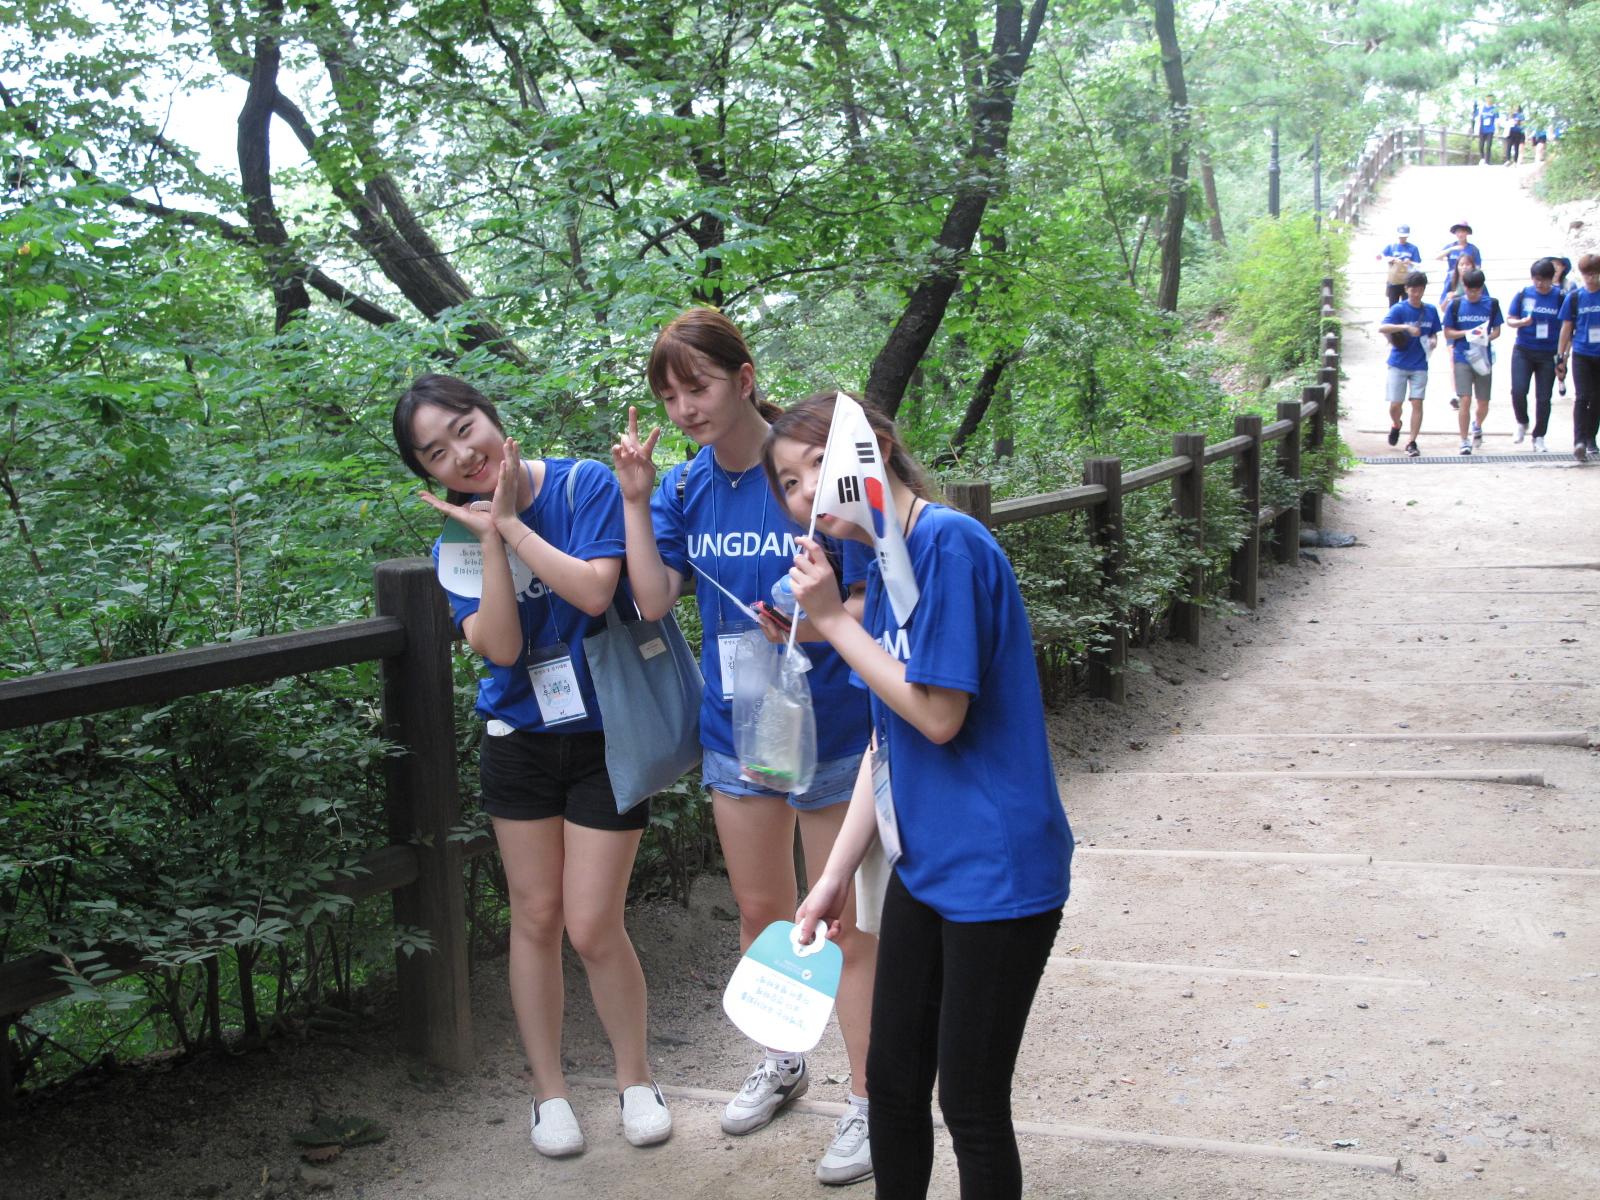 아산장학생은 나눔문화 확산을 위해 8.13일과 14일 한양도성 걷기 행사를 개최했습니다.4